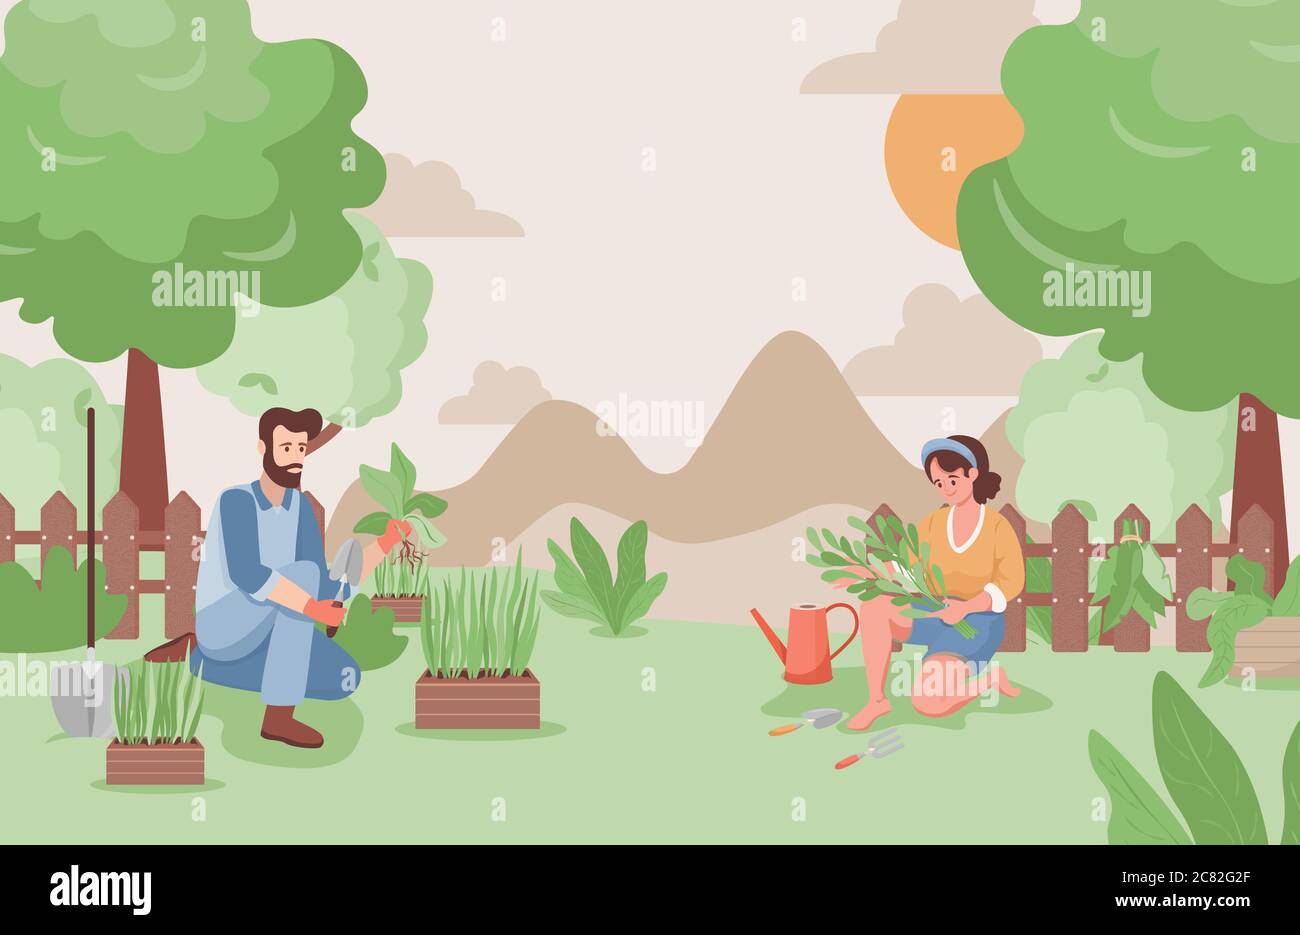 Glücklicher Mann und Frau arbeiten im Garten im Sommer Vektor-flache Illustration. Bauern oder Gärtner Pflanzen Bäume oder Blumen. Sommer Landschaft mit grünen Bäumen, Hügeln und Sträuchern. Stock Vektor